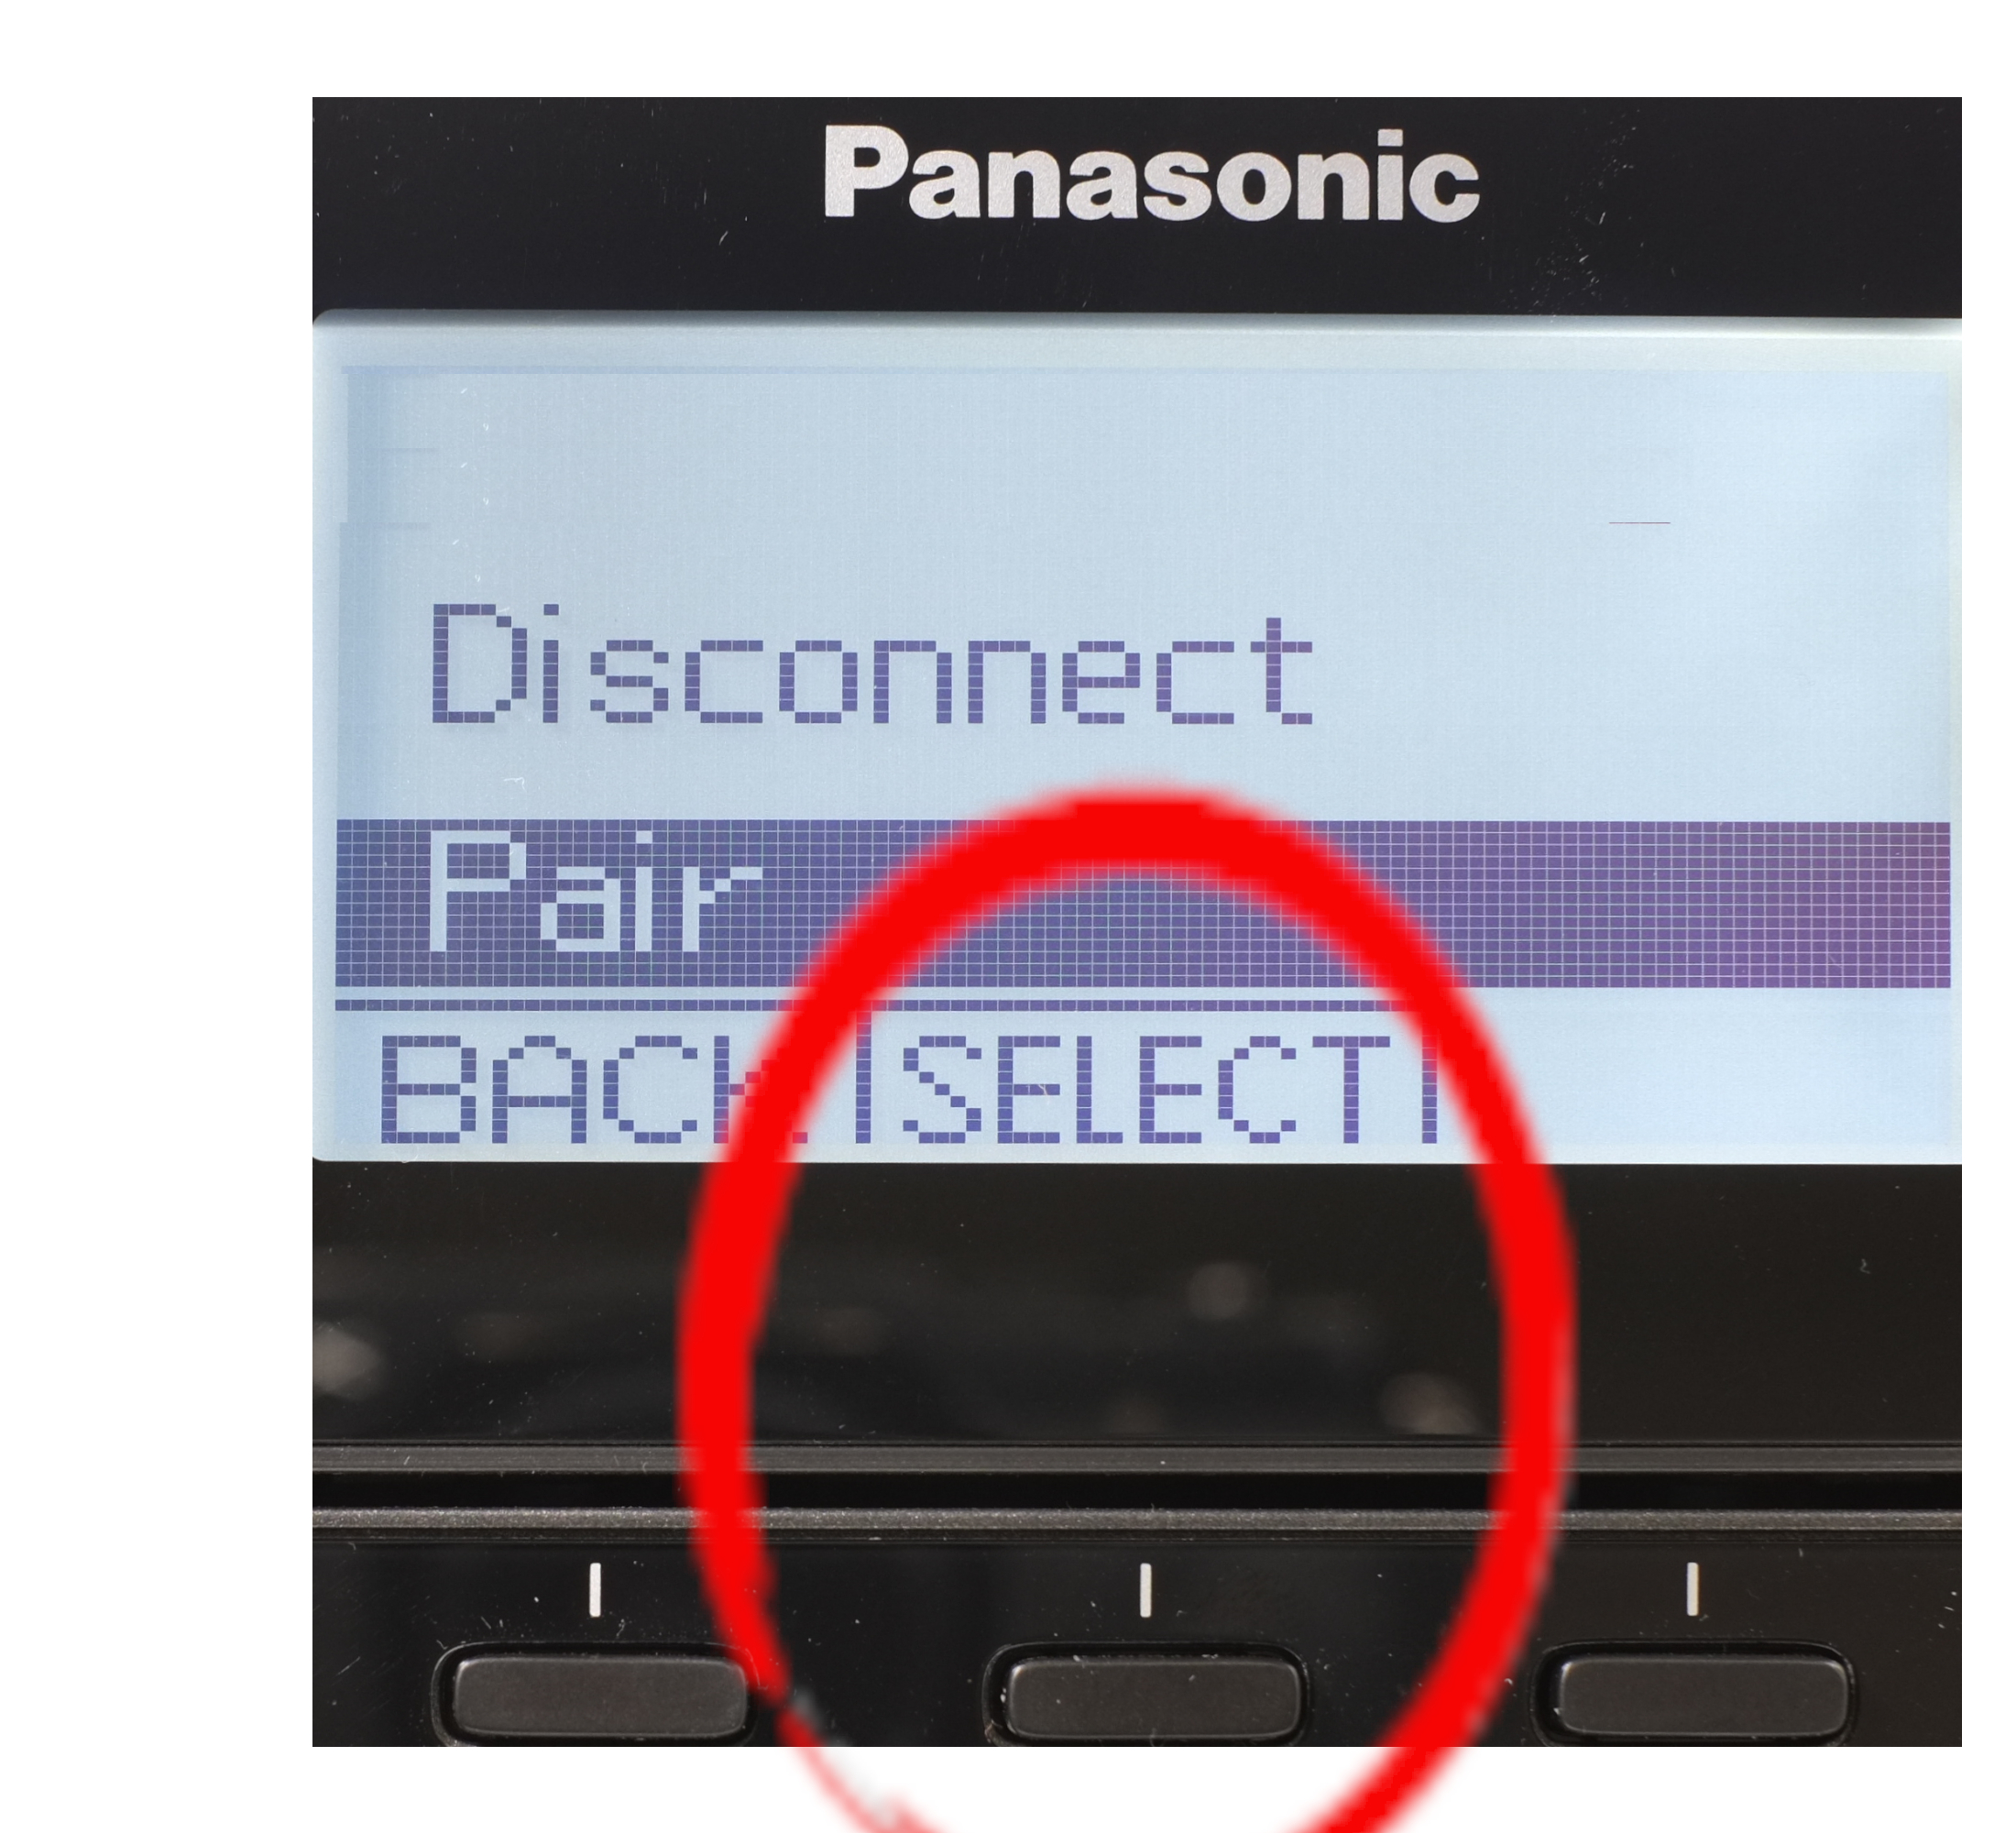 Panasonic phone pairing button